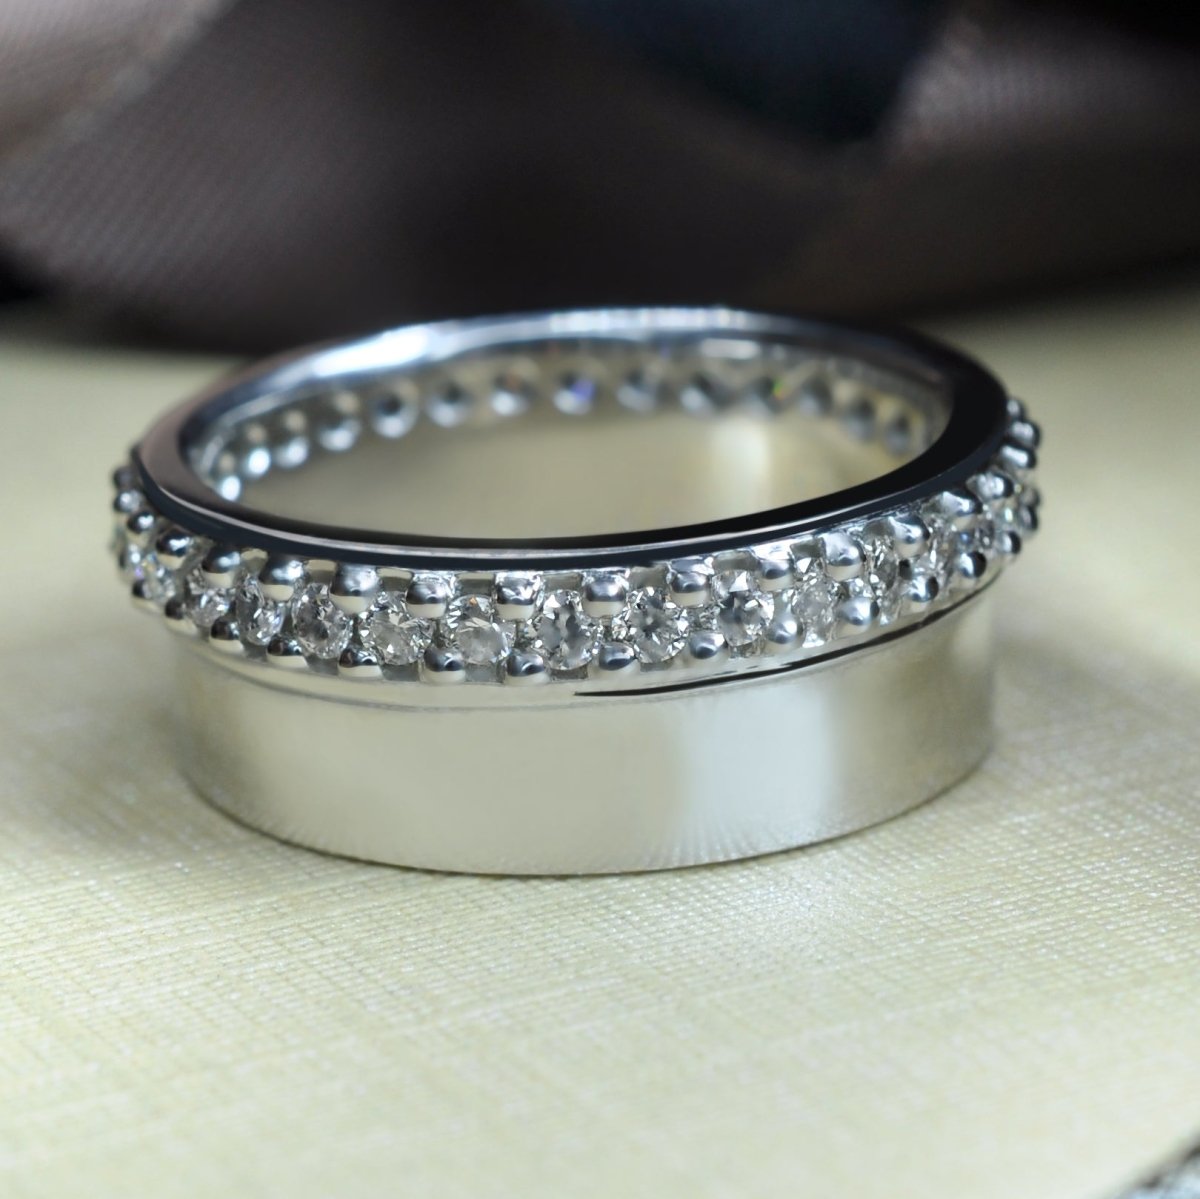 Exclusive 0.75 CT Round Cut Diamond Wedding Ring in Platinum - Primestyle.com